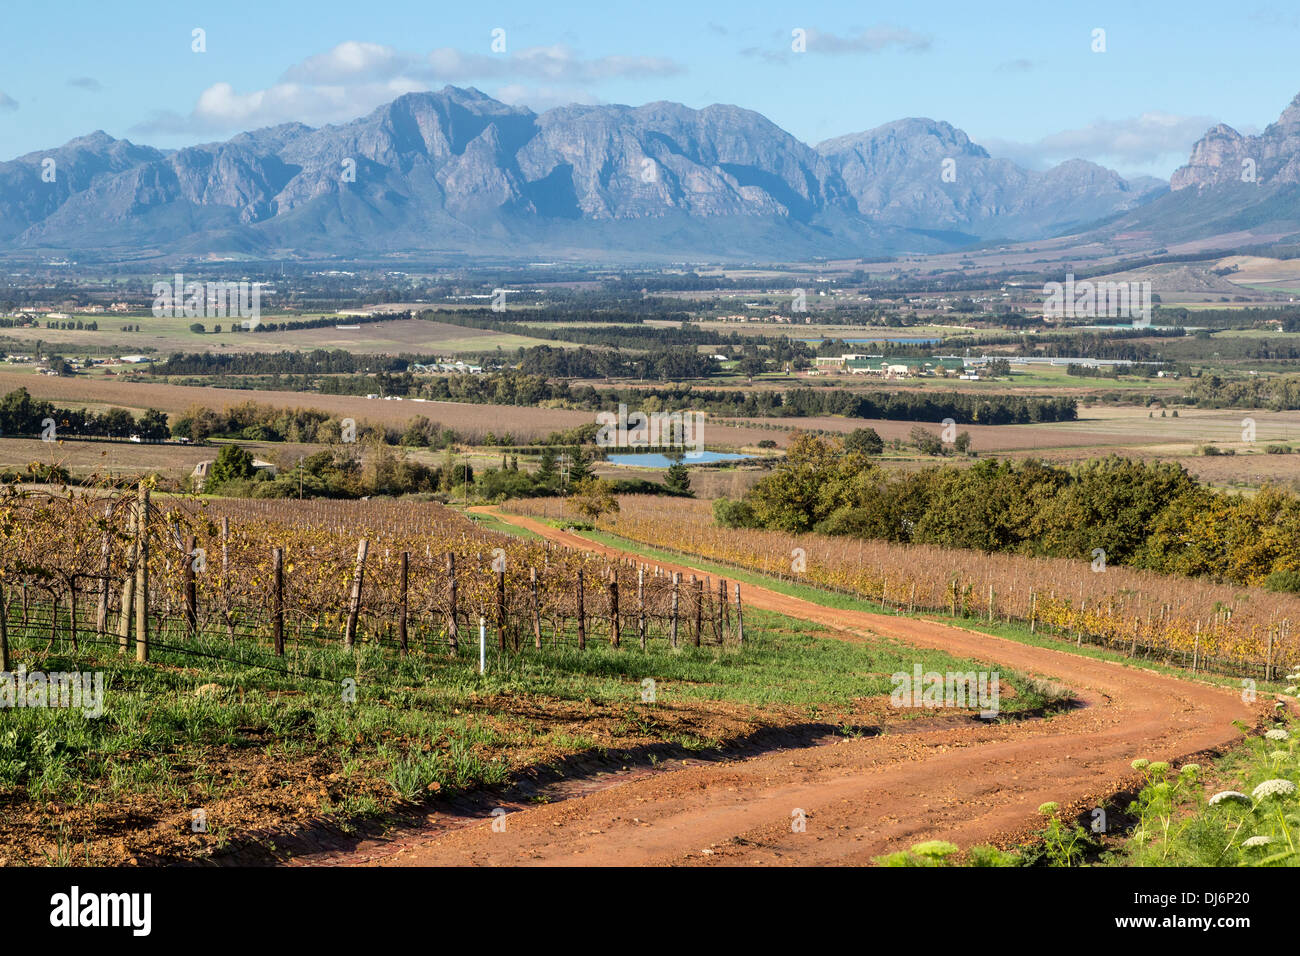 Sud Africa, Paarl area, nei pressi di Città del Capo. Paesaggio panoramico. Vigneto in inverno sulla sinistra. Foto Stock